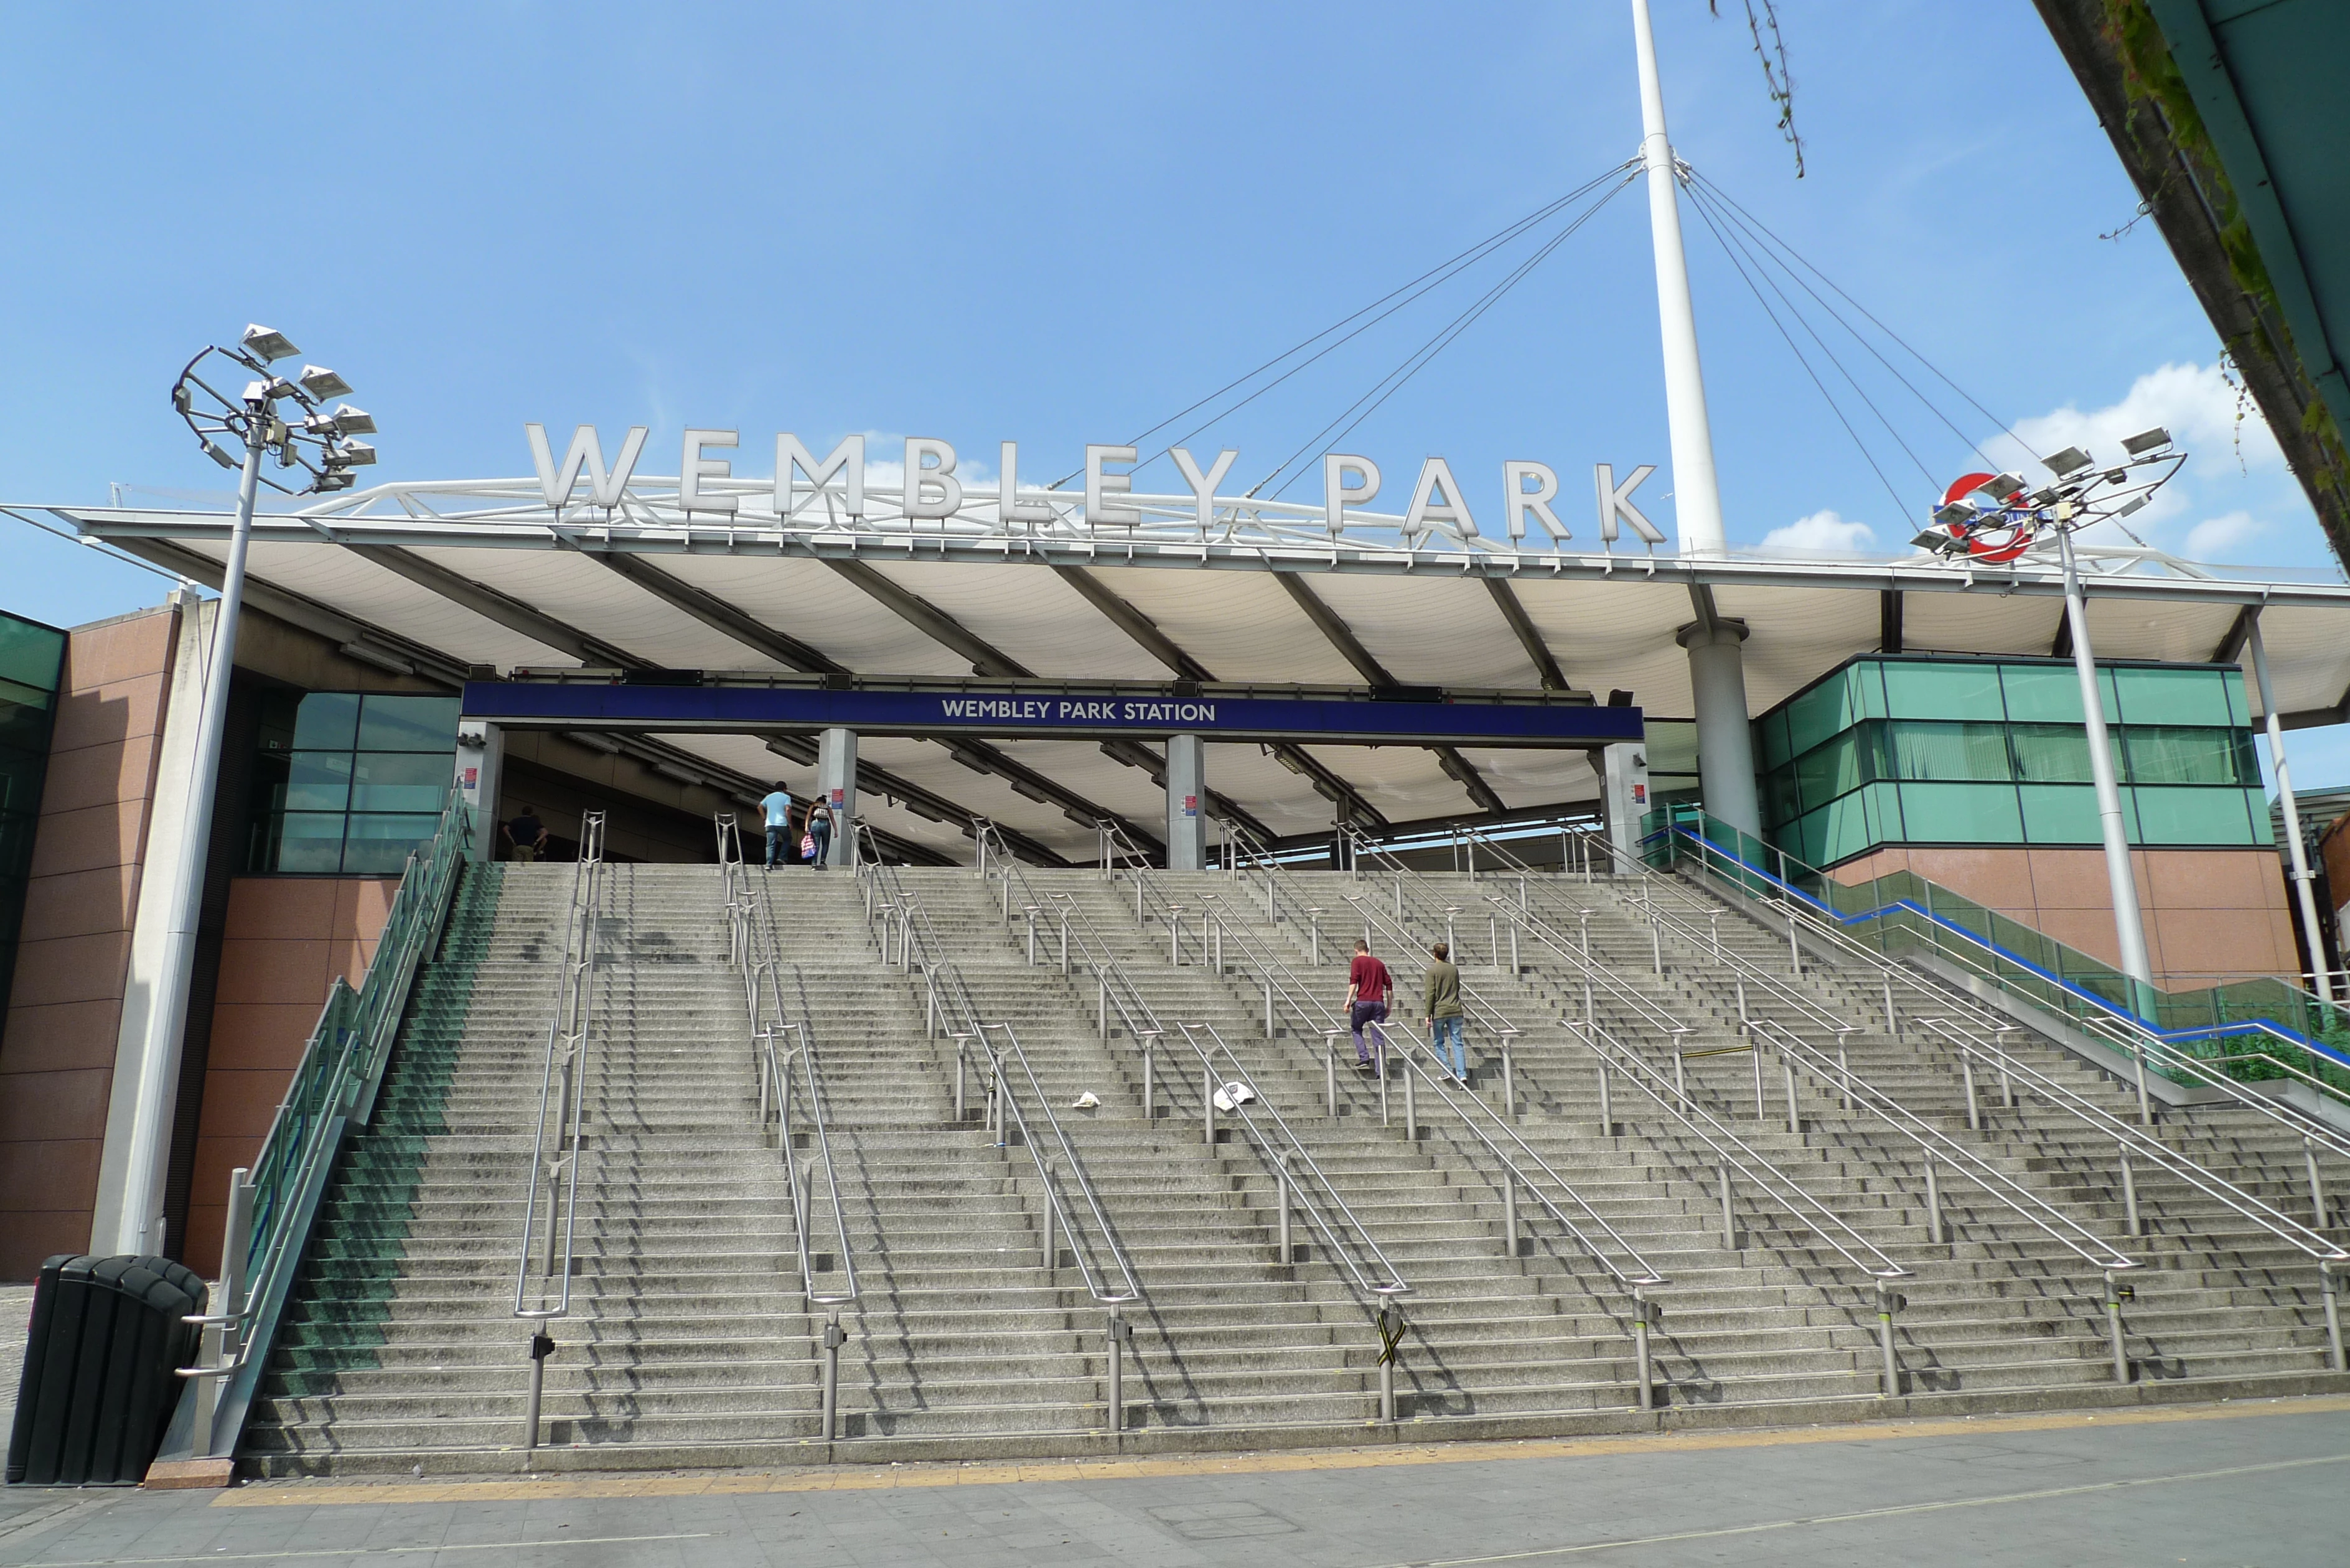 Wembley Park station